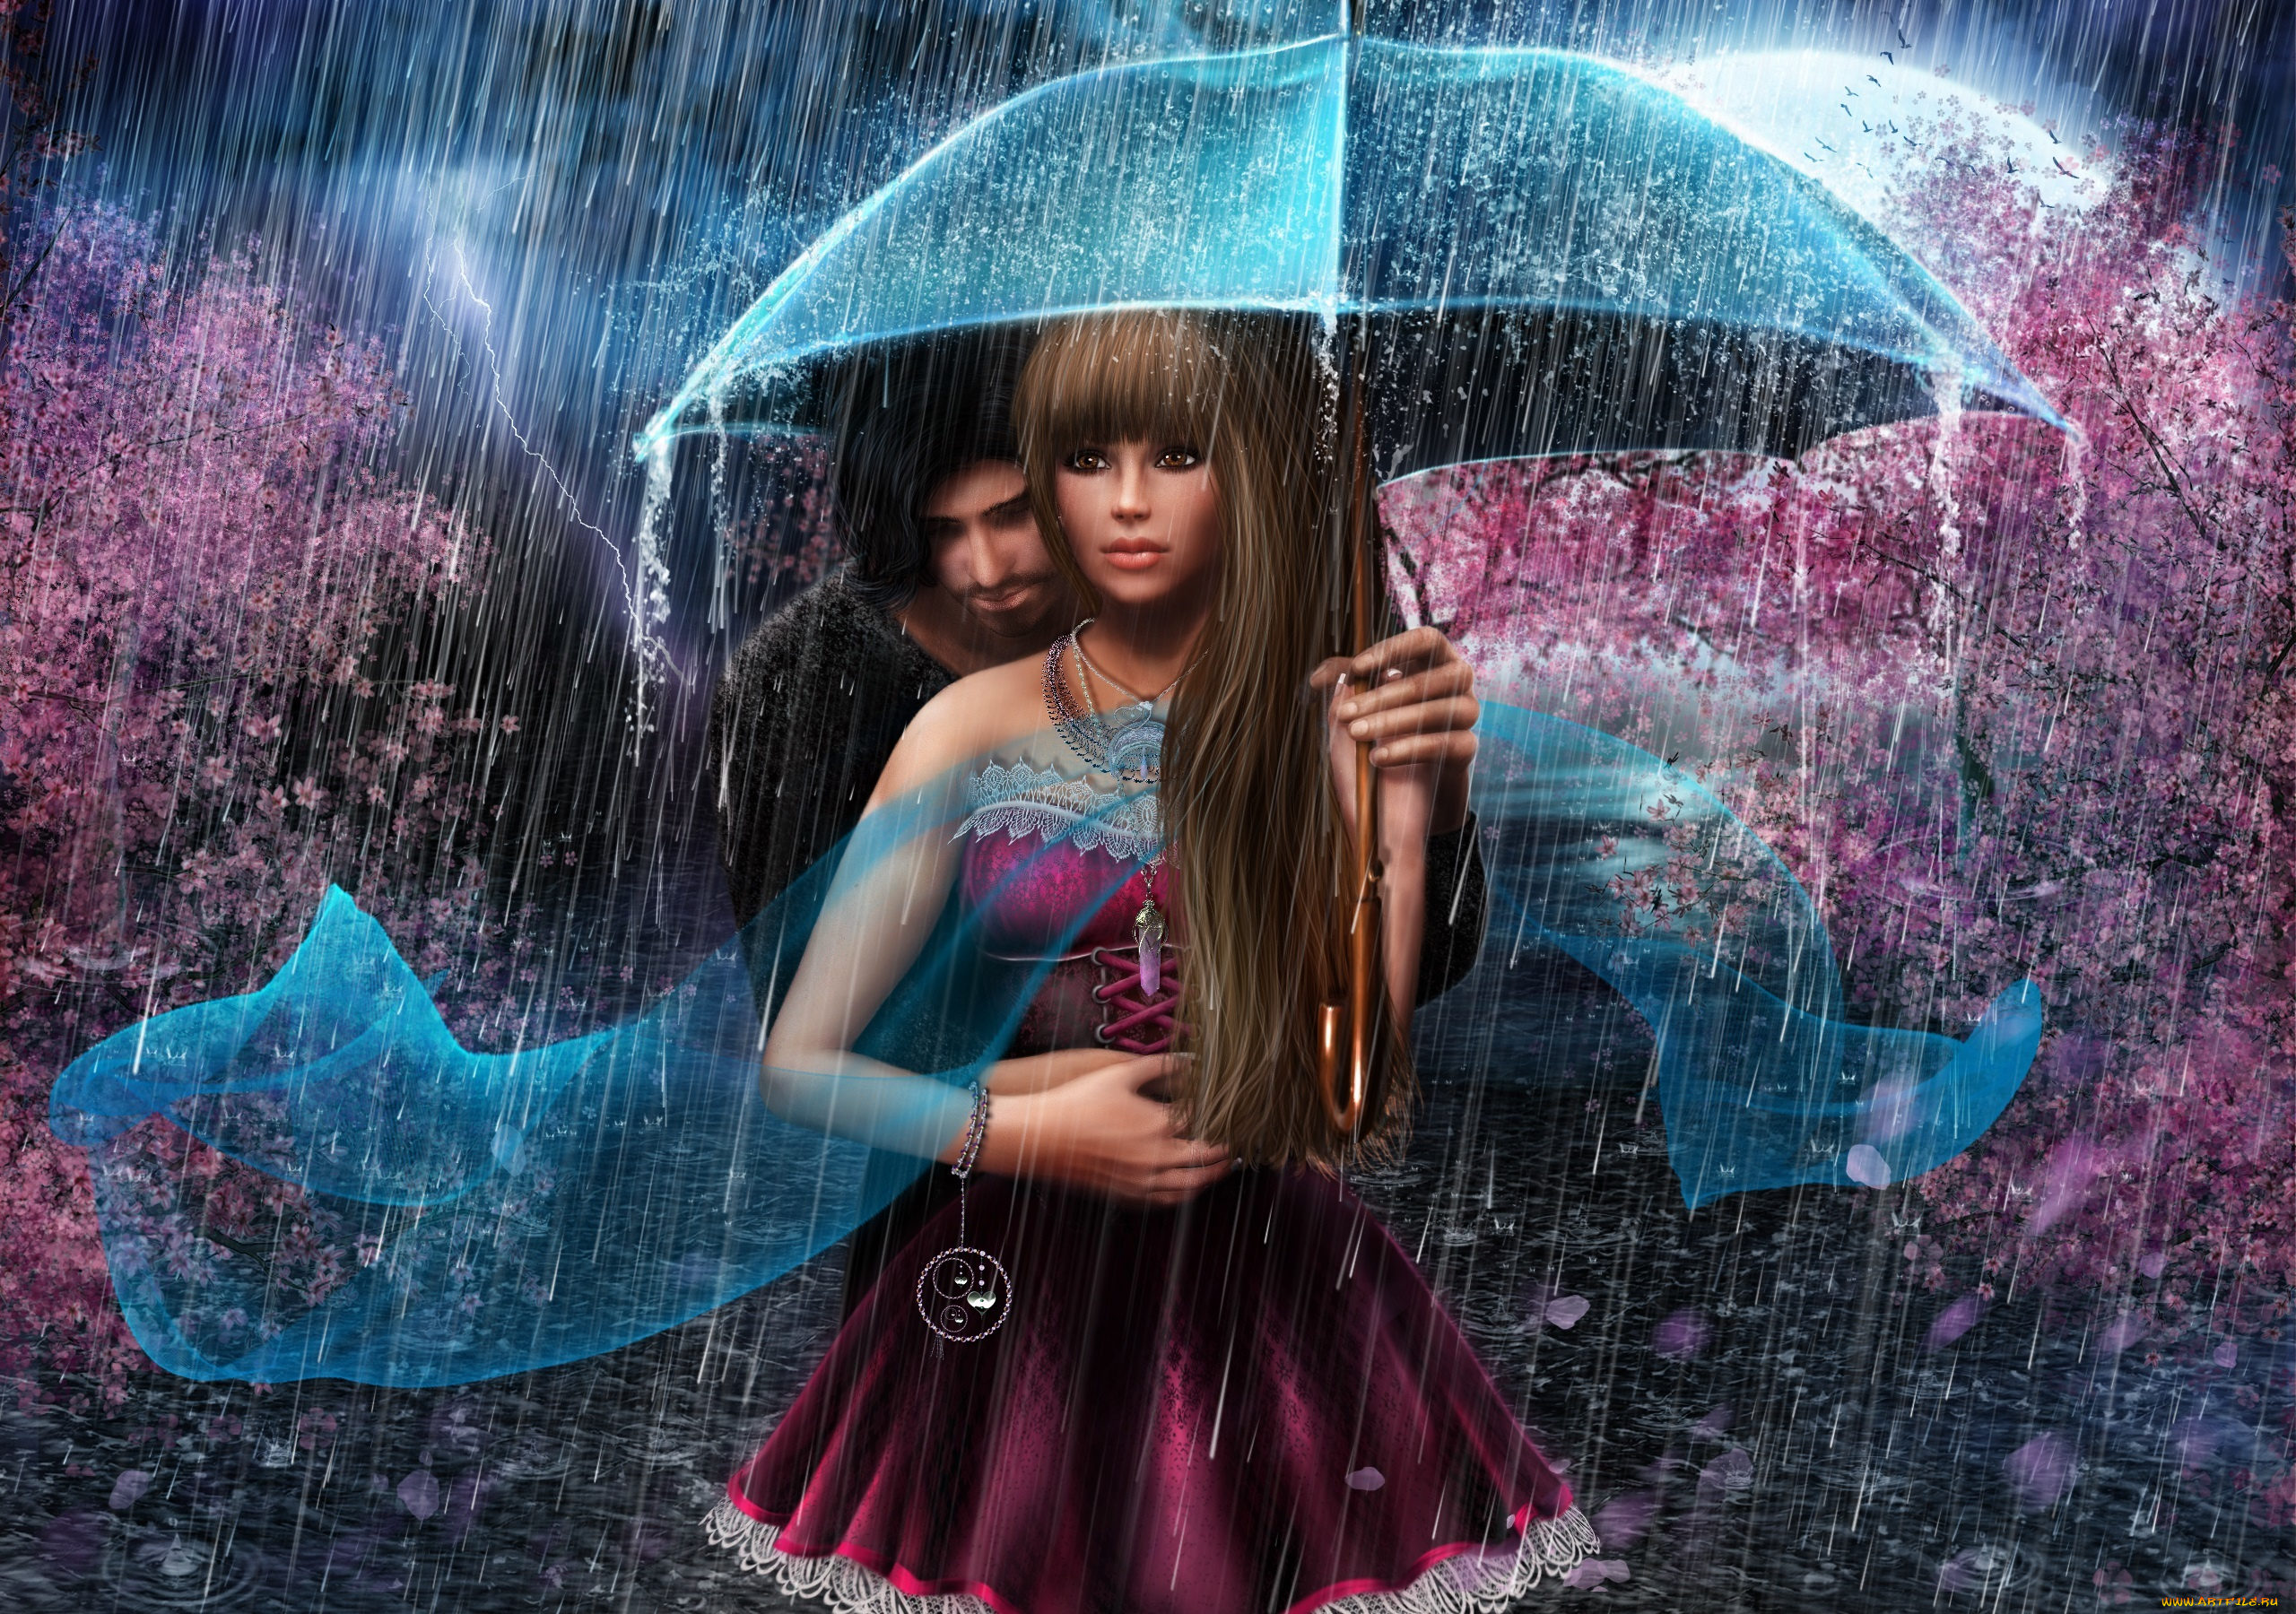 рисованное, люди, девушка, зонт, романтика, дождь, молния, парень